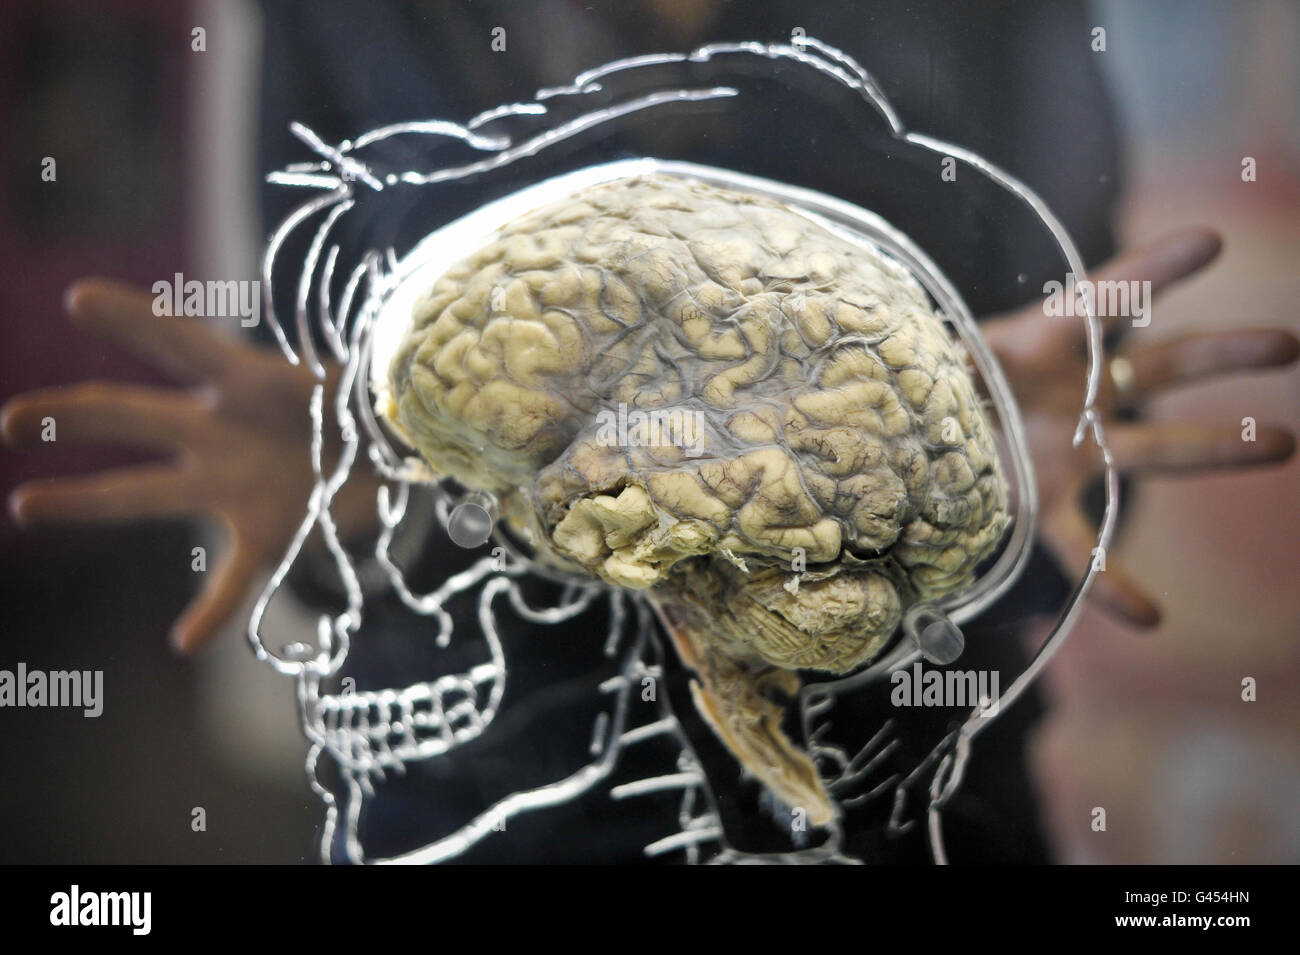 Ein echtes menschliches Gehirn in Flüssigkeit mit einem maßstabsgefertigten Skelett, zentralem Nervensystem und menschlicher Silhouette in Acryl gehauen, in der @Bristol Science Attraction als Teil der neuen Ausstellung "All About US", die am Freitag, 11. März, für die Öffentlichkeit geöffnet wird. Stockfoto